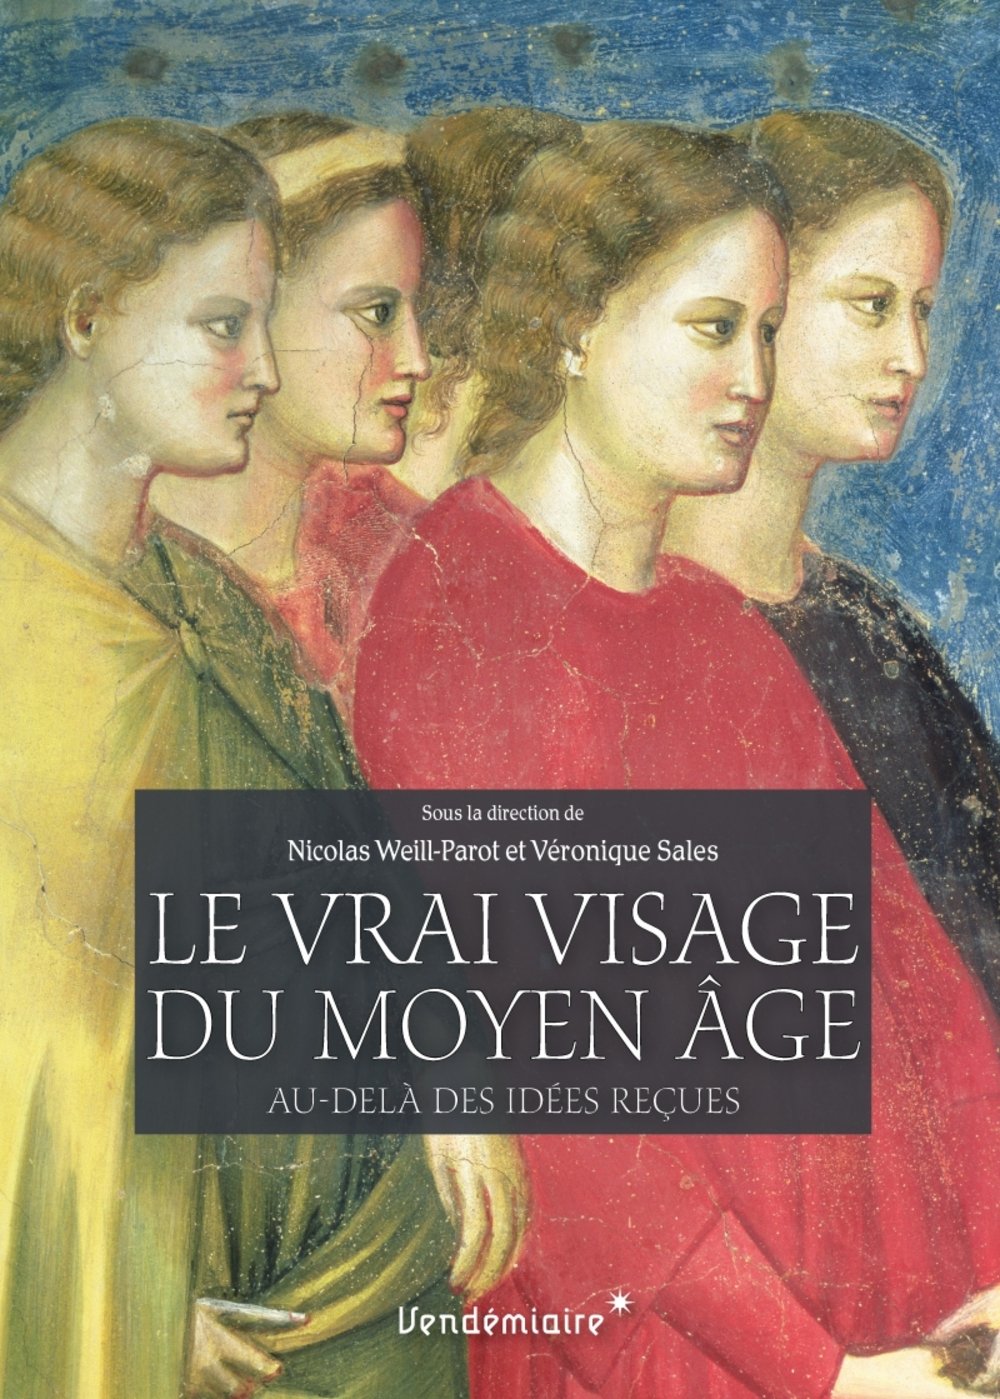 Le vrai visage du Moyen Age. Au-delà des idées reçues, 2017, 410 p.